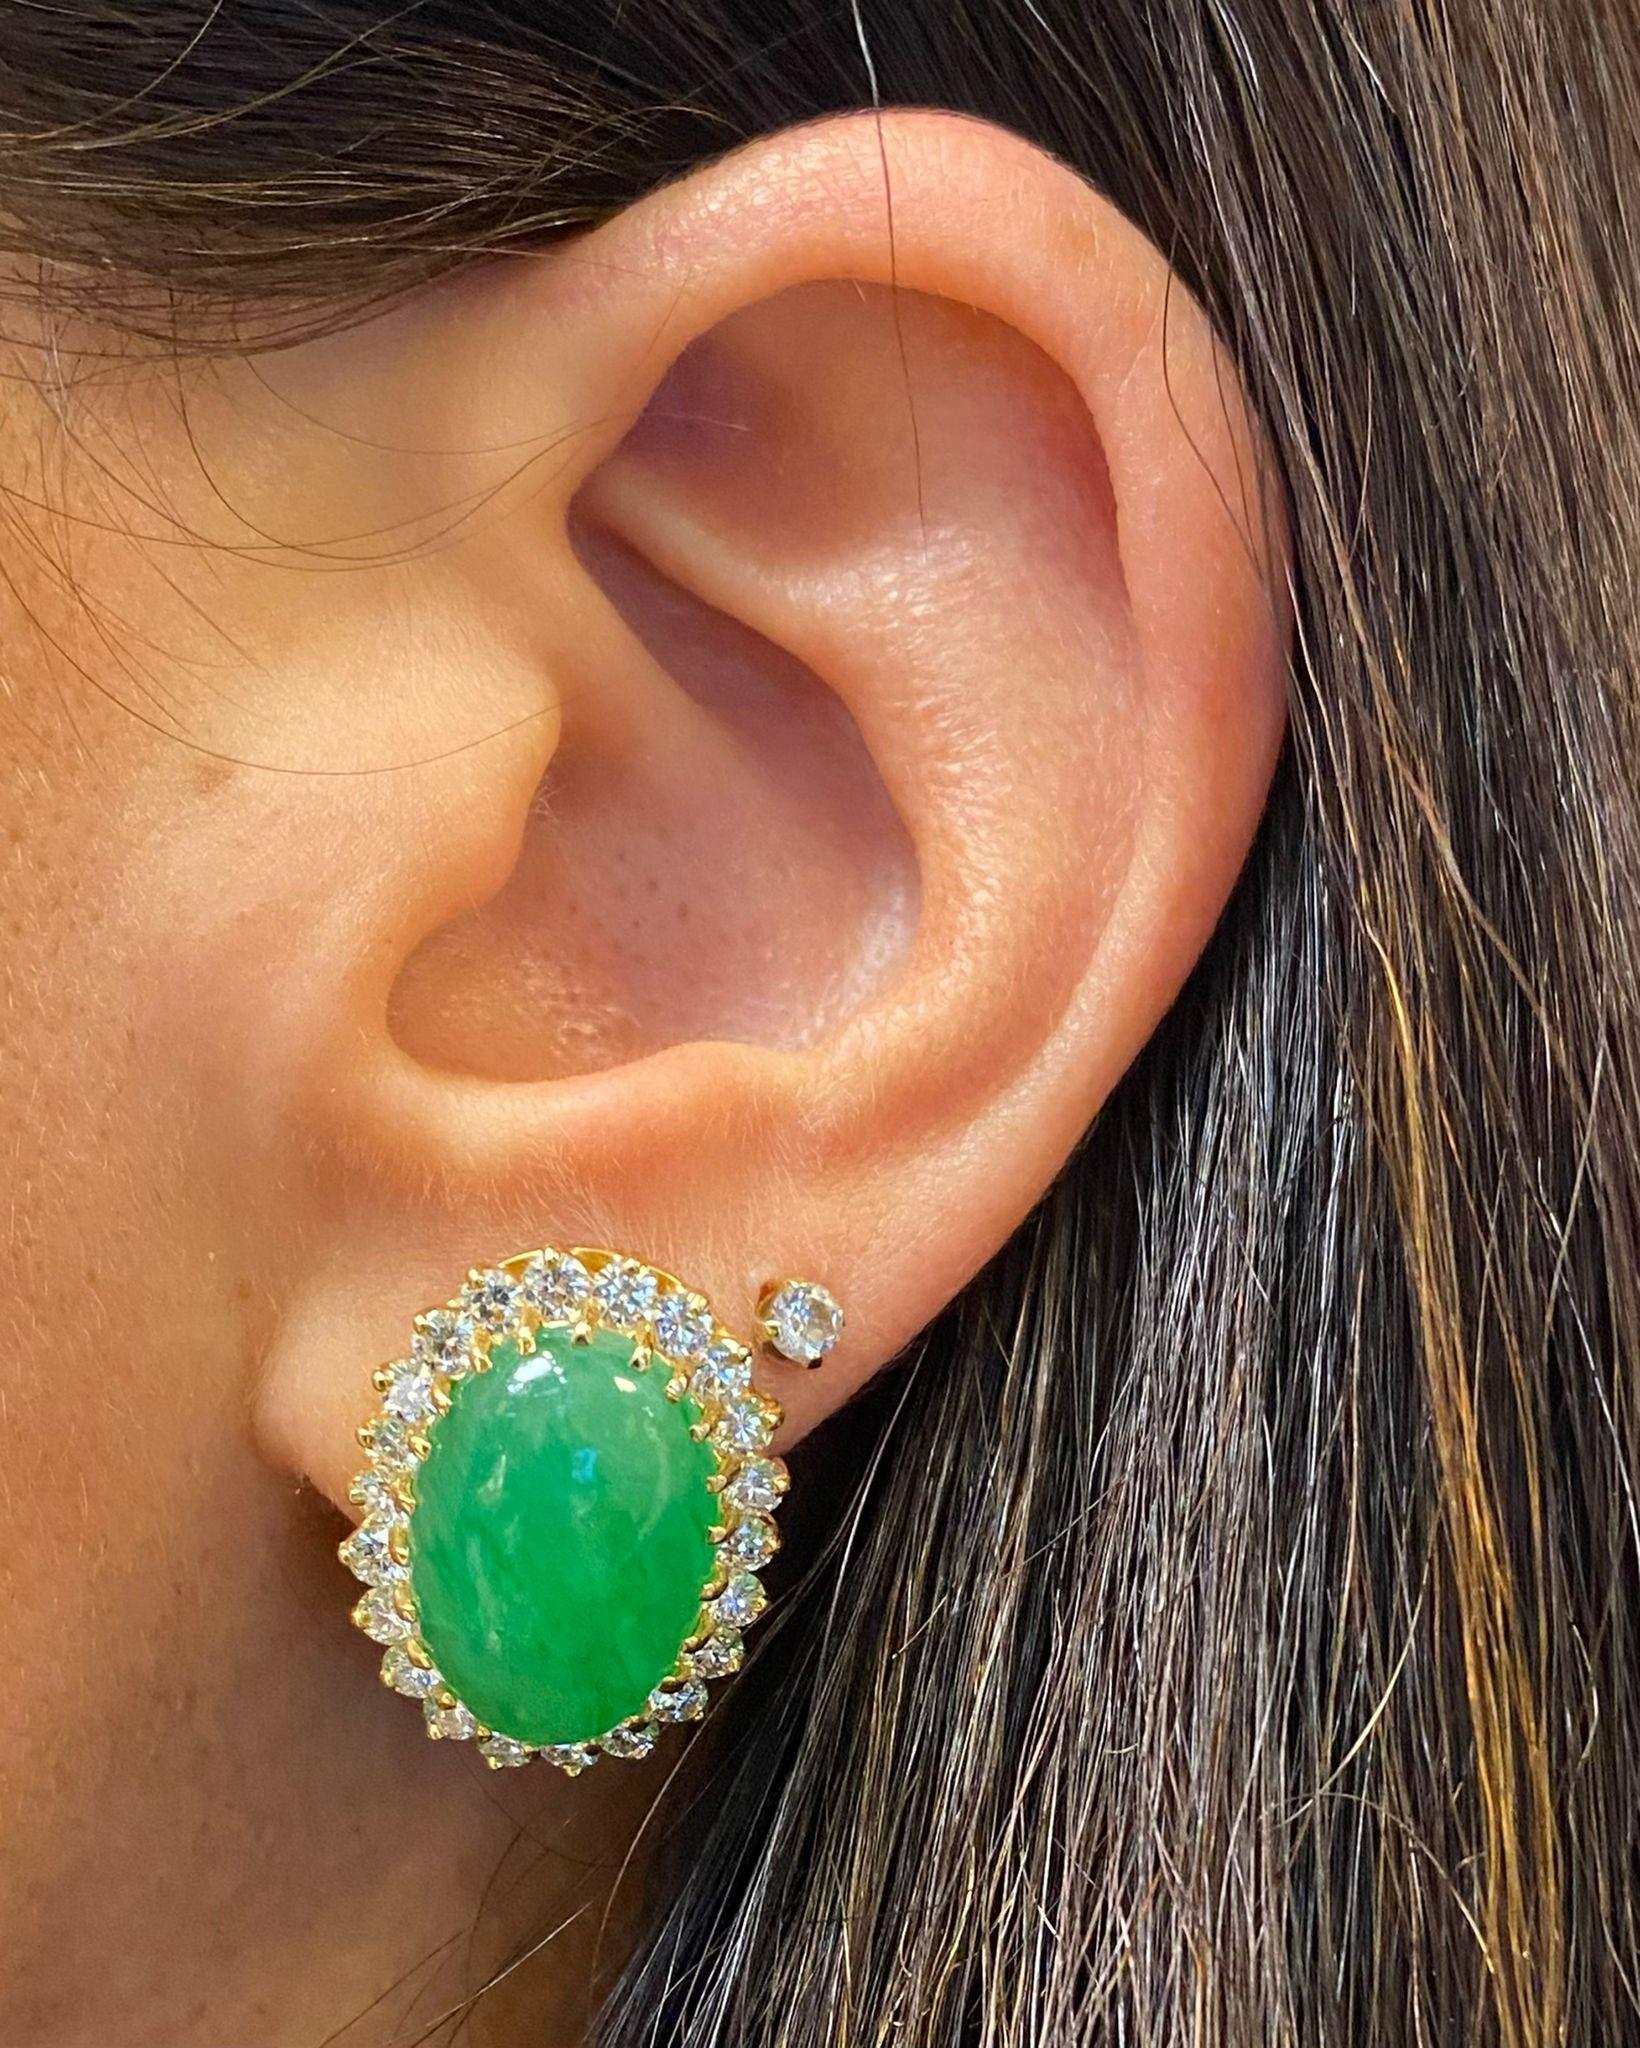 Jade & Diamant-Ohrringe

Ein Paar Ohrringe aus Gelbgold, besetzt mit 44 Diamanten im Rundschliff und 2 Cabochon-Jades

Ungefähres Gesamtgewicht der Diamanten: 2,2 Karat

Länge: 0,88